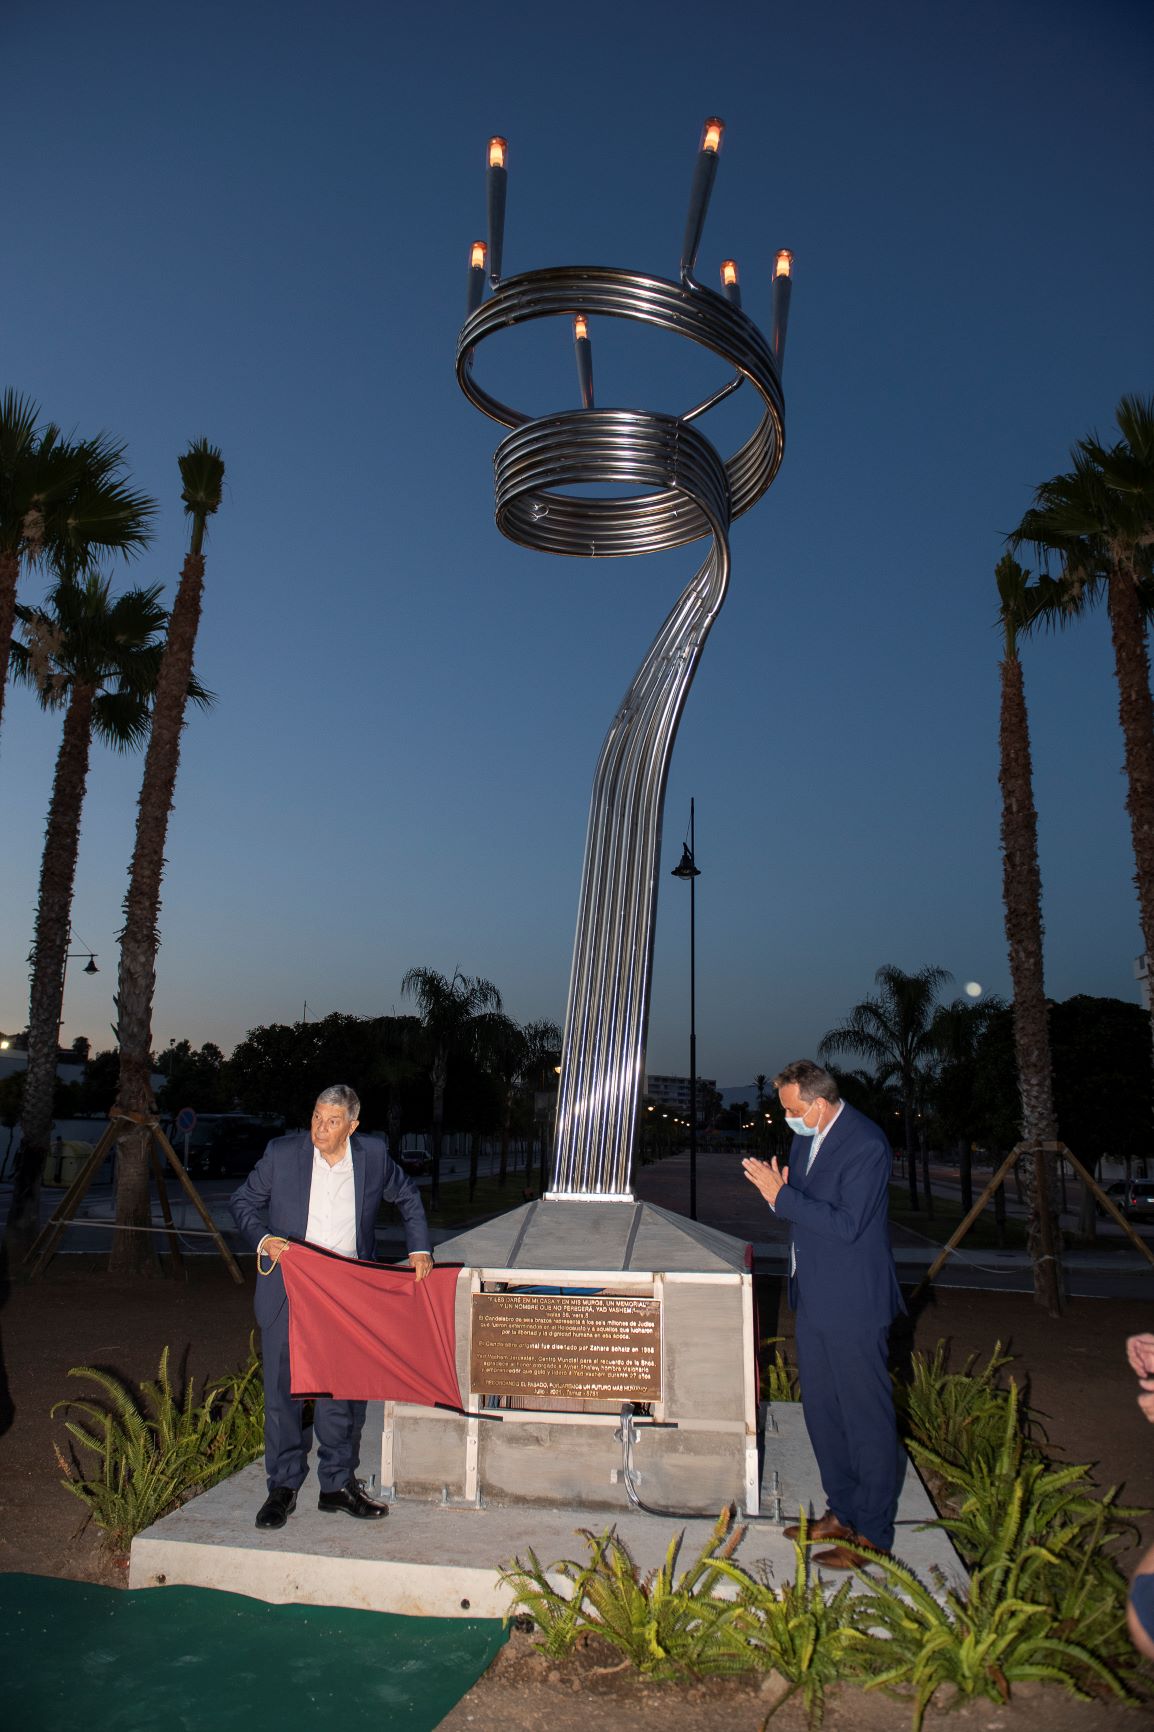 Avner Shalev durante la develación de una placa en su honor al pie de la Menorá de Yad Vashem junto al alcalde de la ciudad de Torremolinos el Sr. D. José Ortiz García